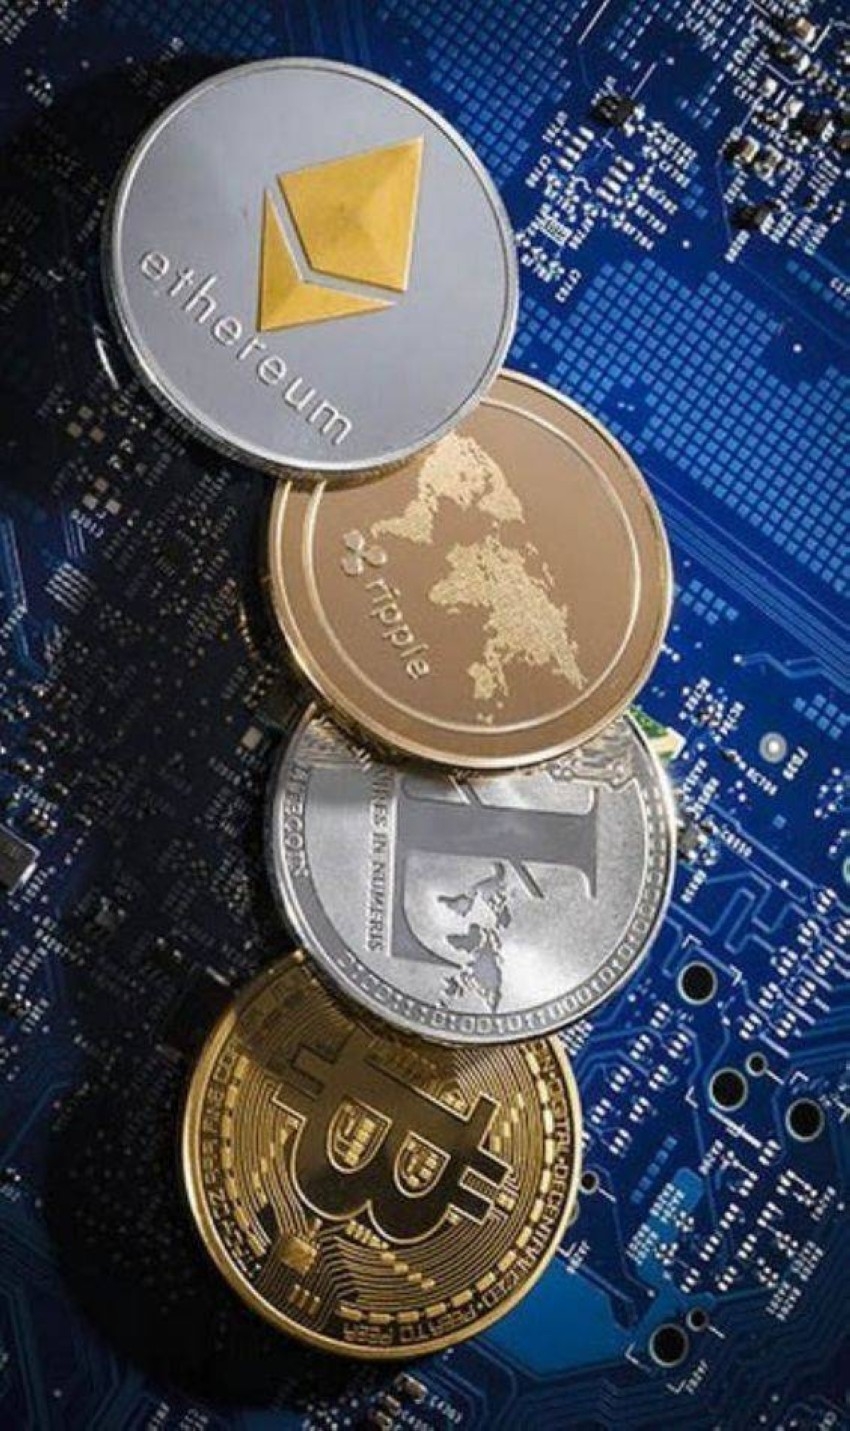 كيف يتم تداول العملات الرقمية بدون وسيط؟